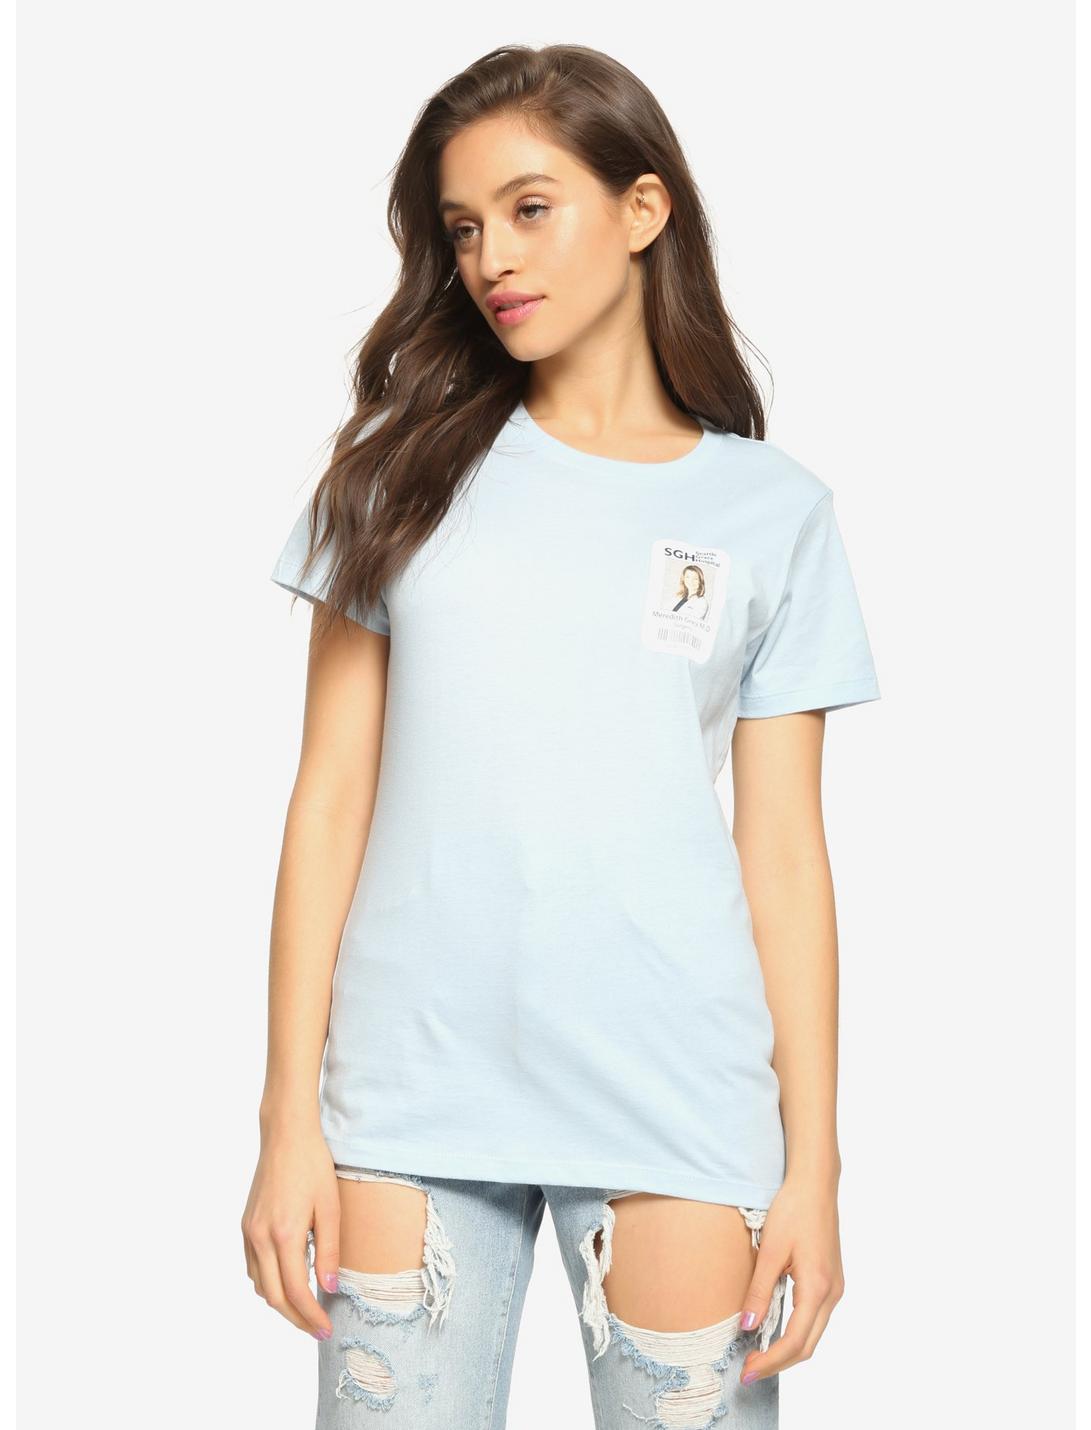 Grey's Anatomy Meredith Badge Girls T-Shirt, WHITE, hi-res